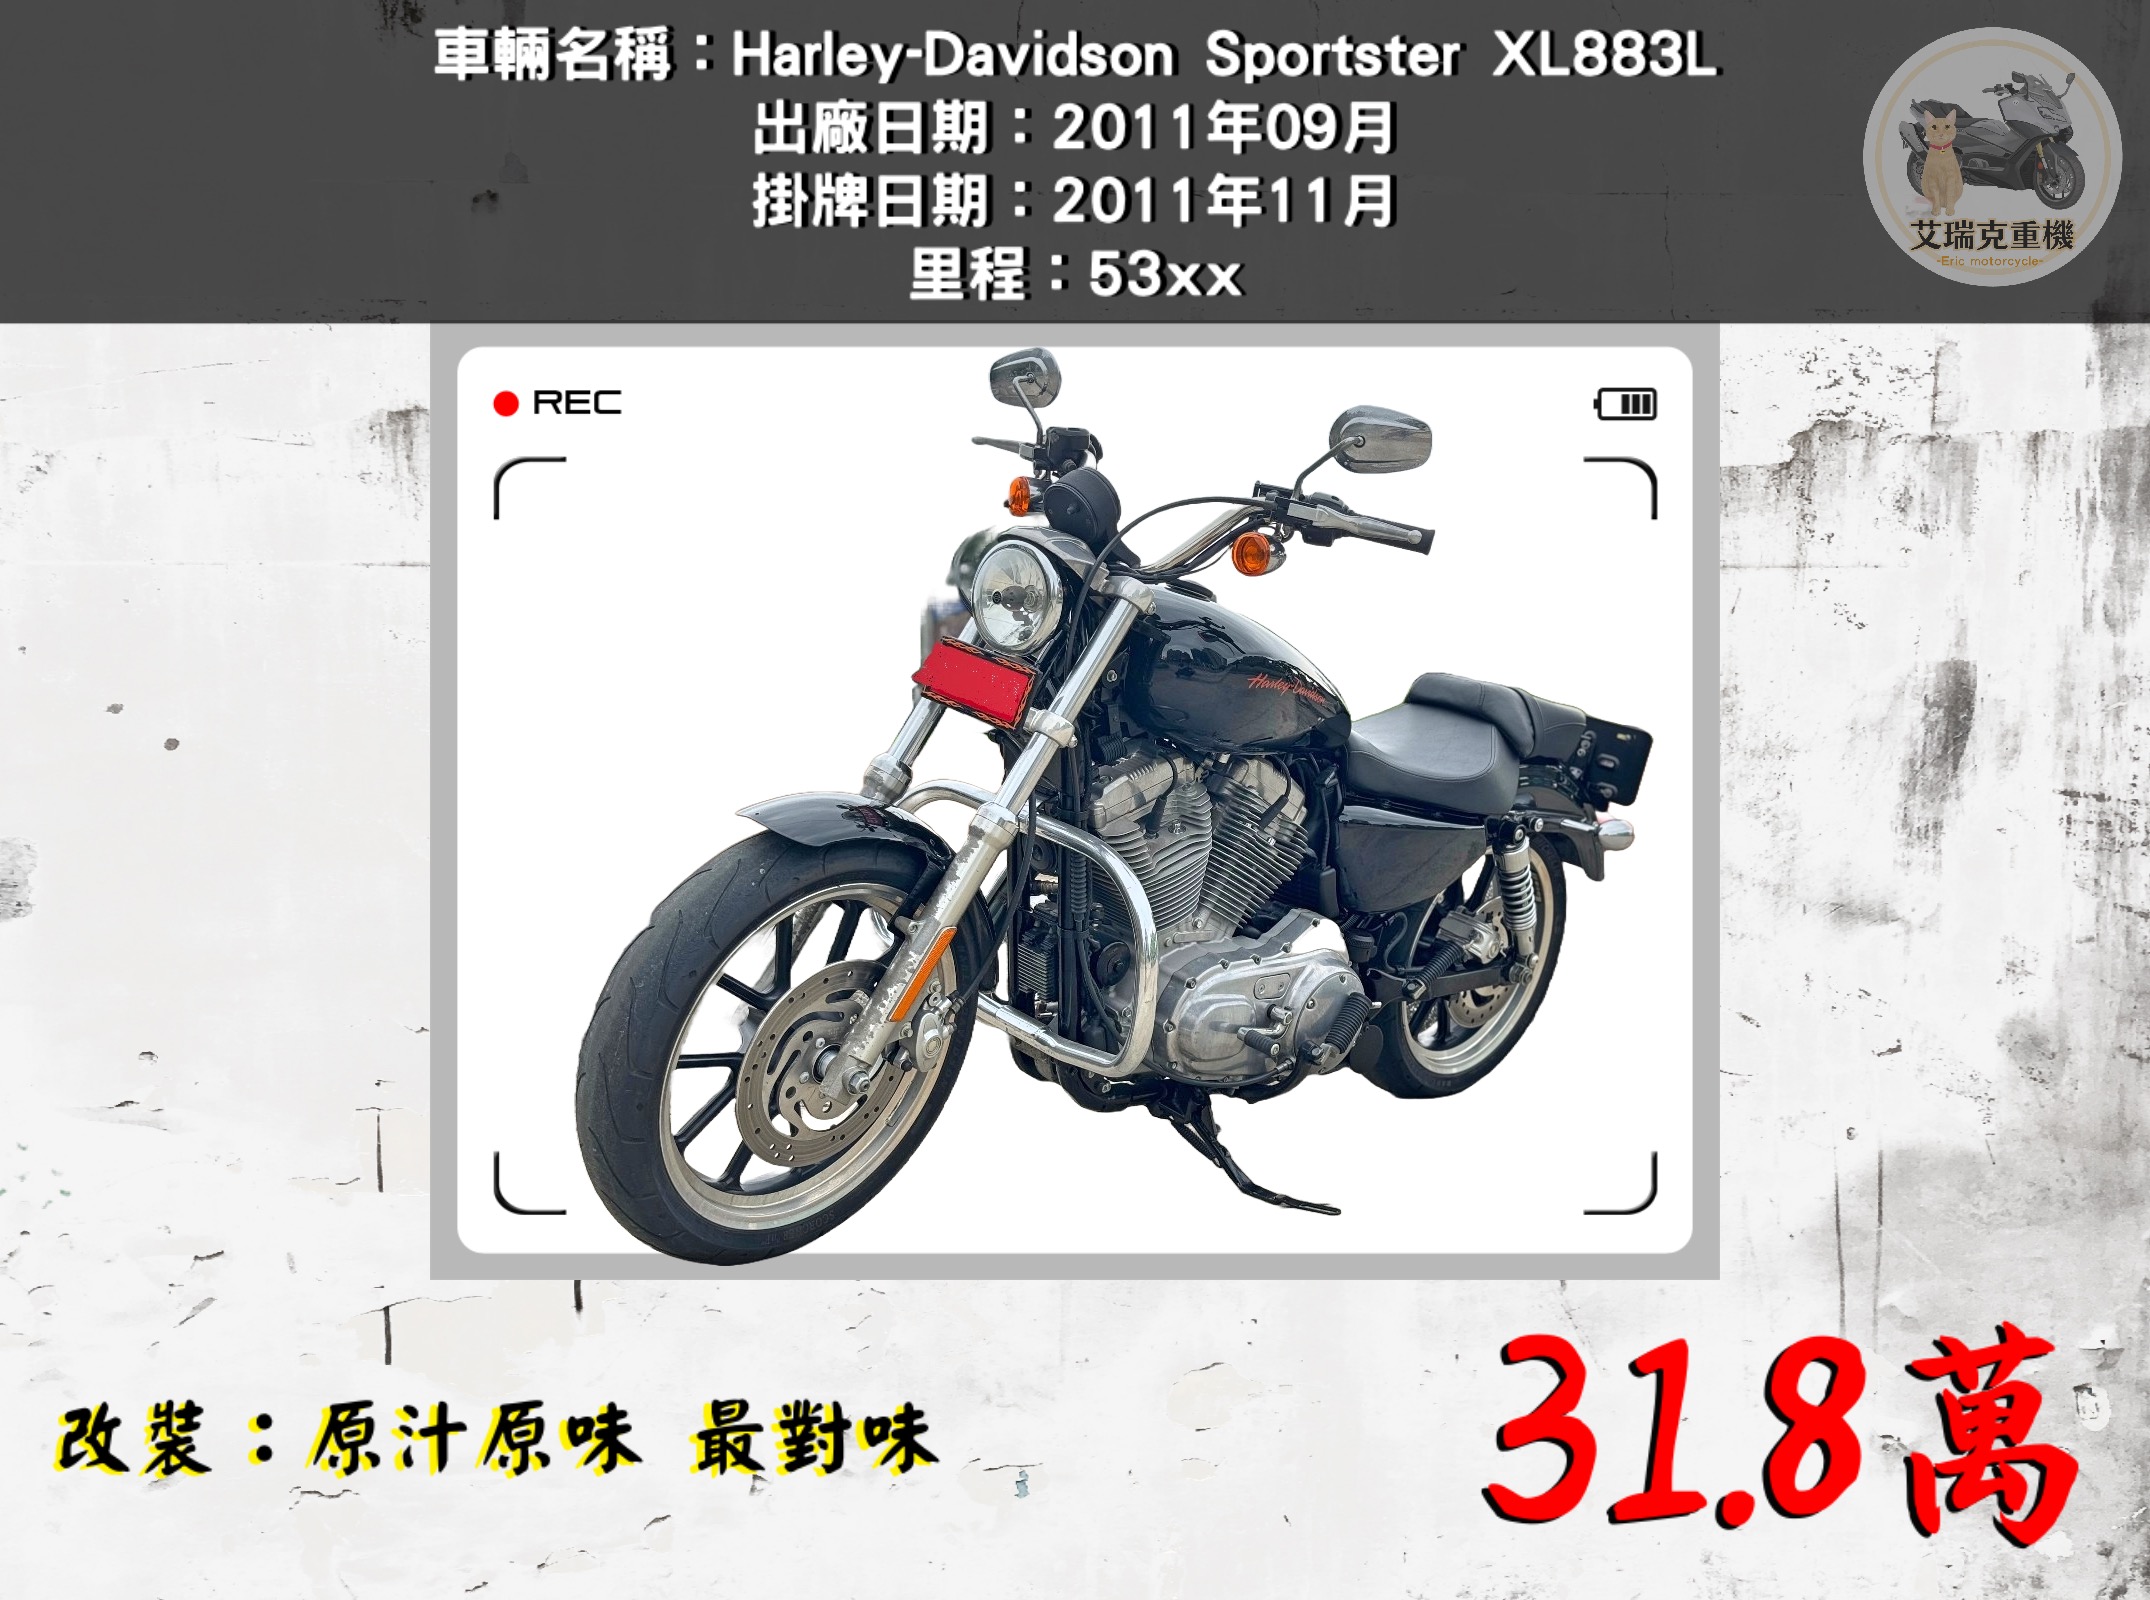 【艾瑞克重機】HARLEY-DAVIDSON XL883L - 「Webike-摩托車市」  Harley-Davidson Sportster XL883L